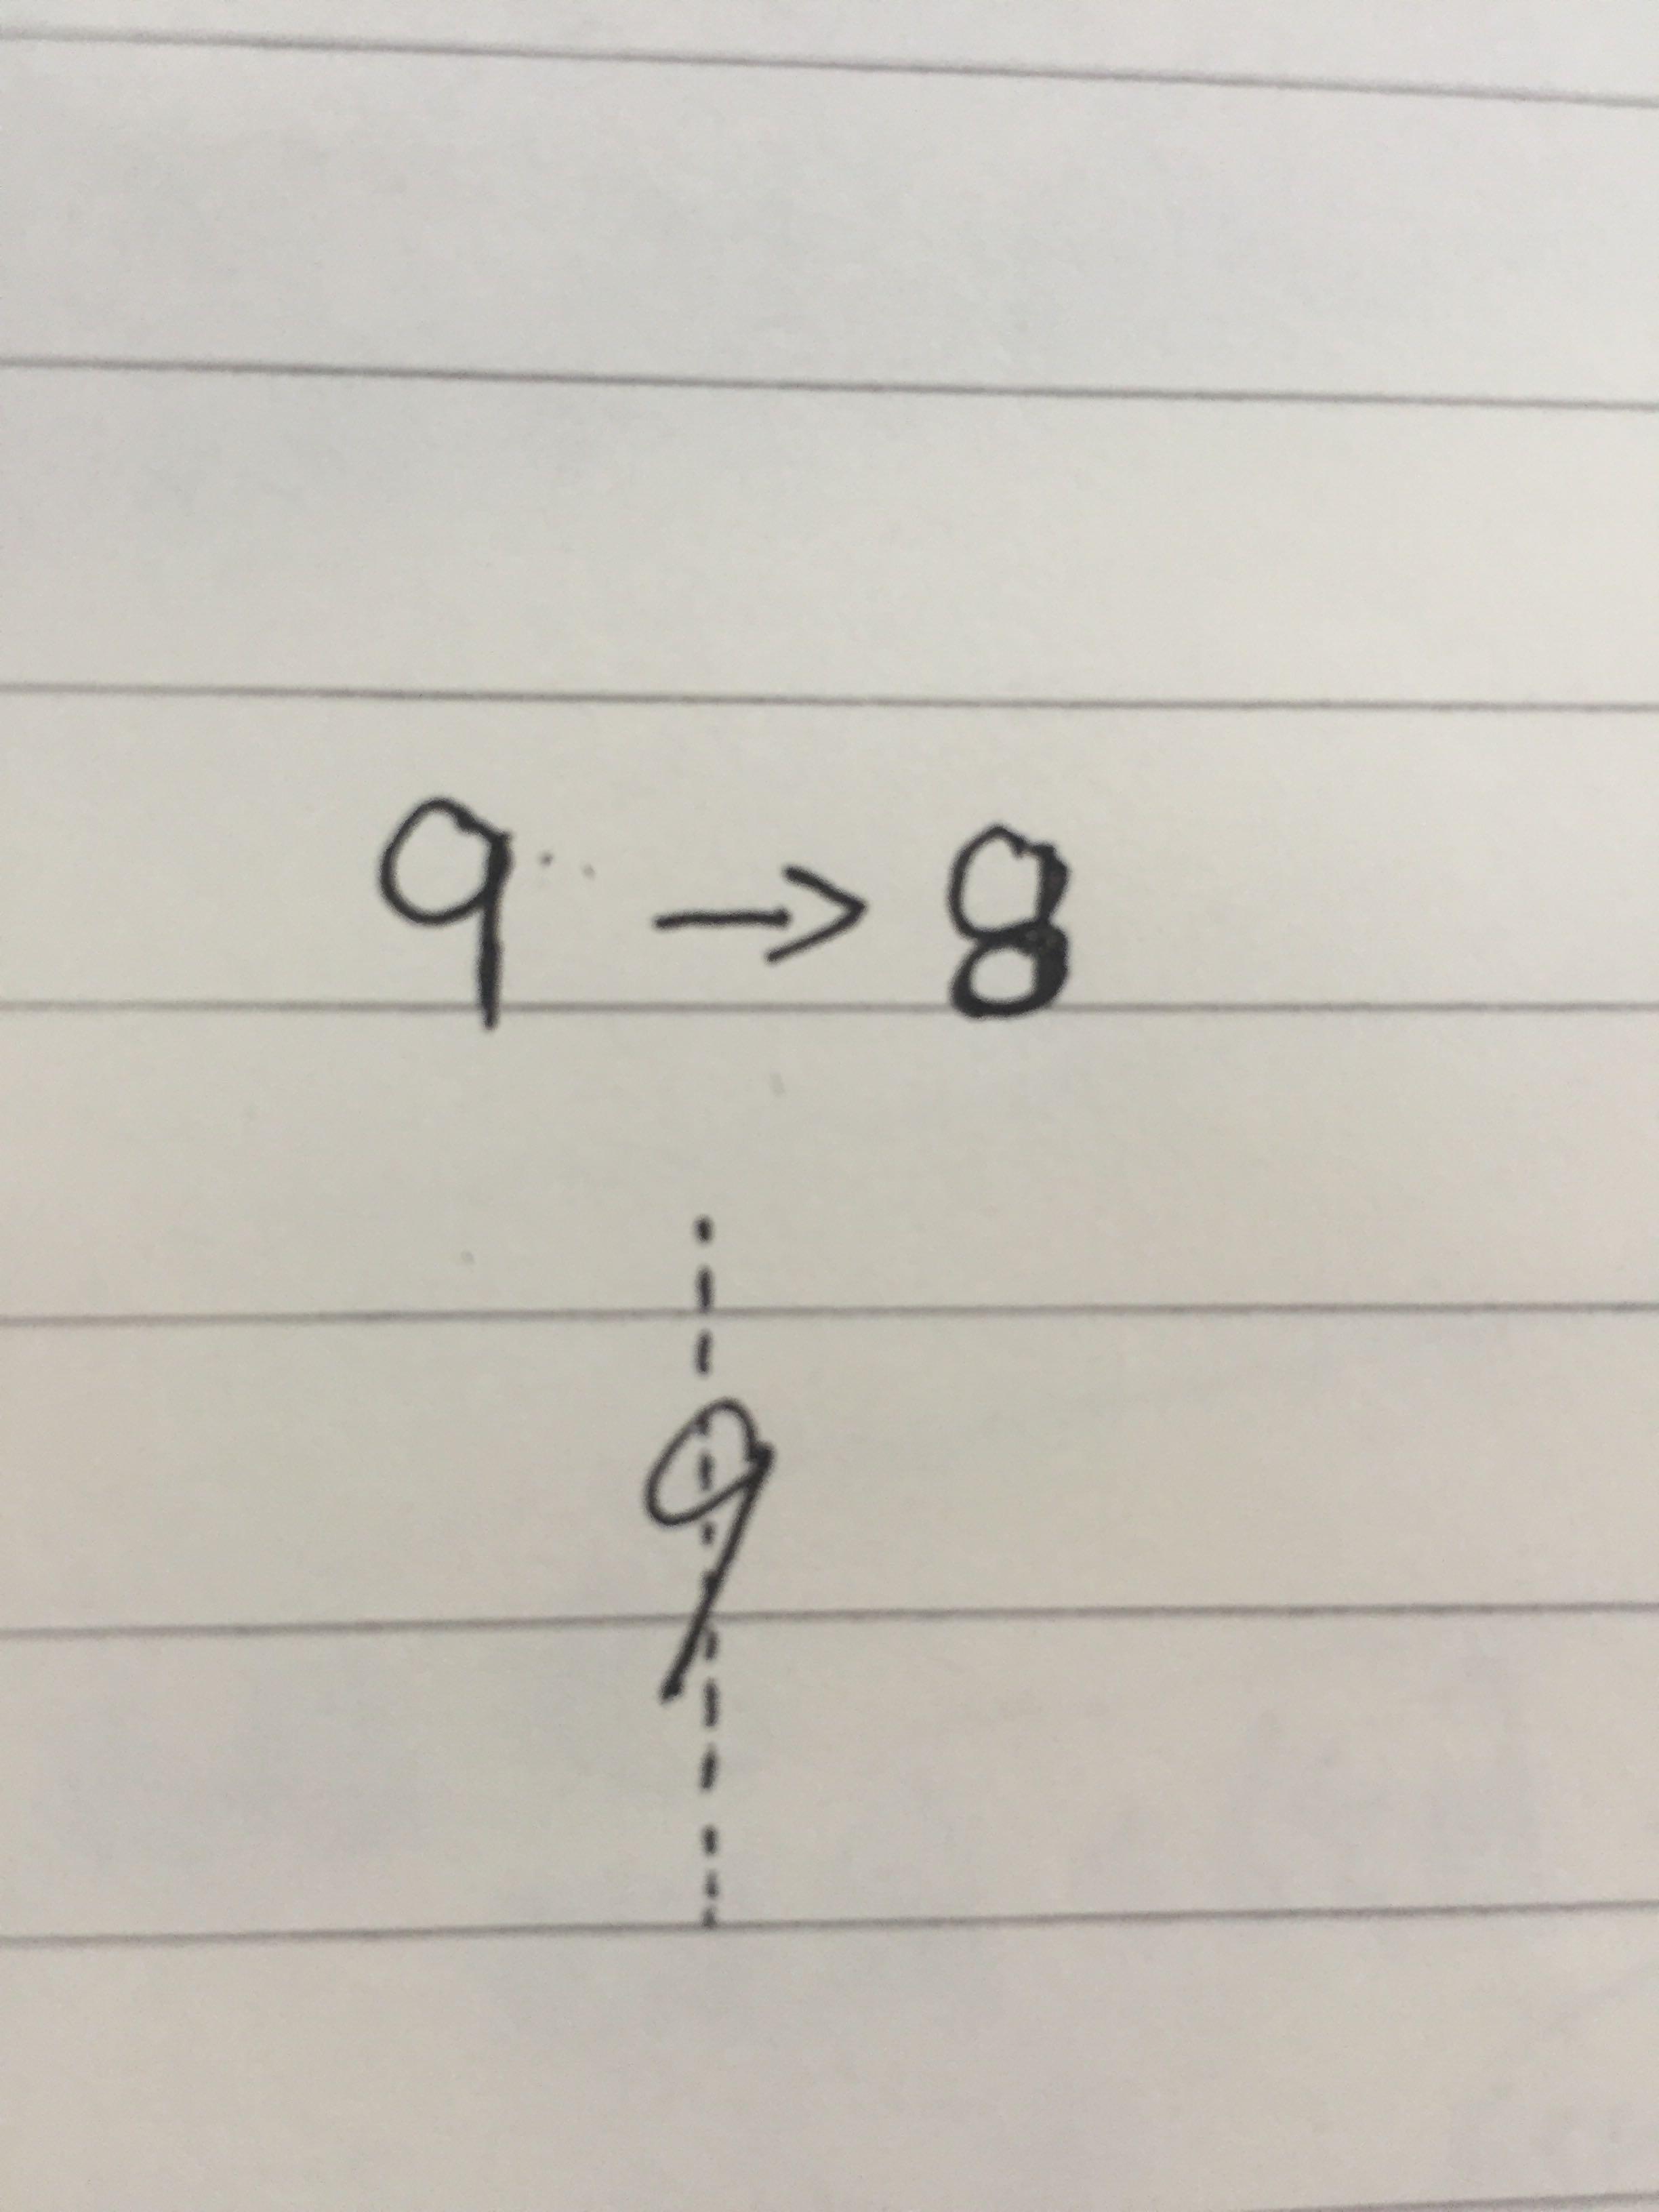 为什么中国人与西方人的手写体阿拉伯数字「9」不一样? 